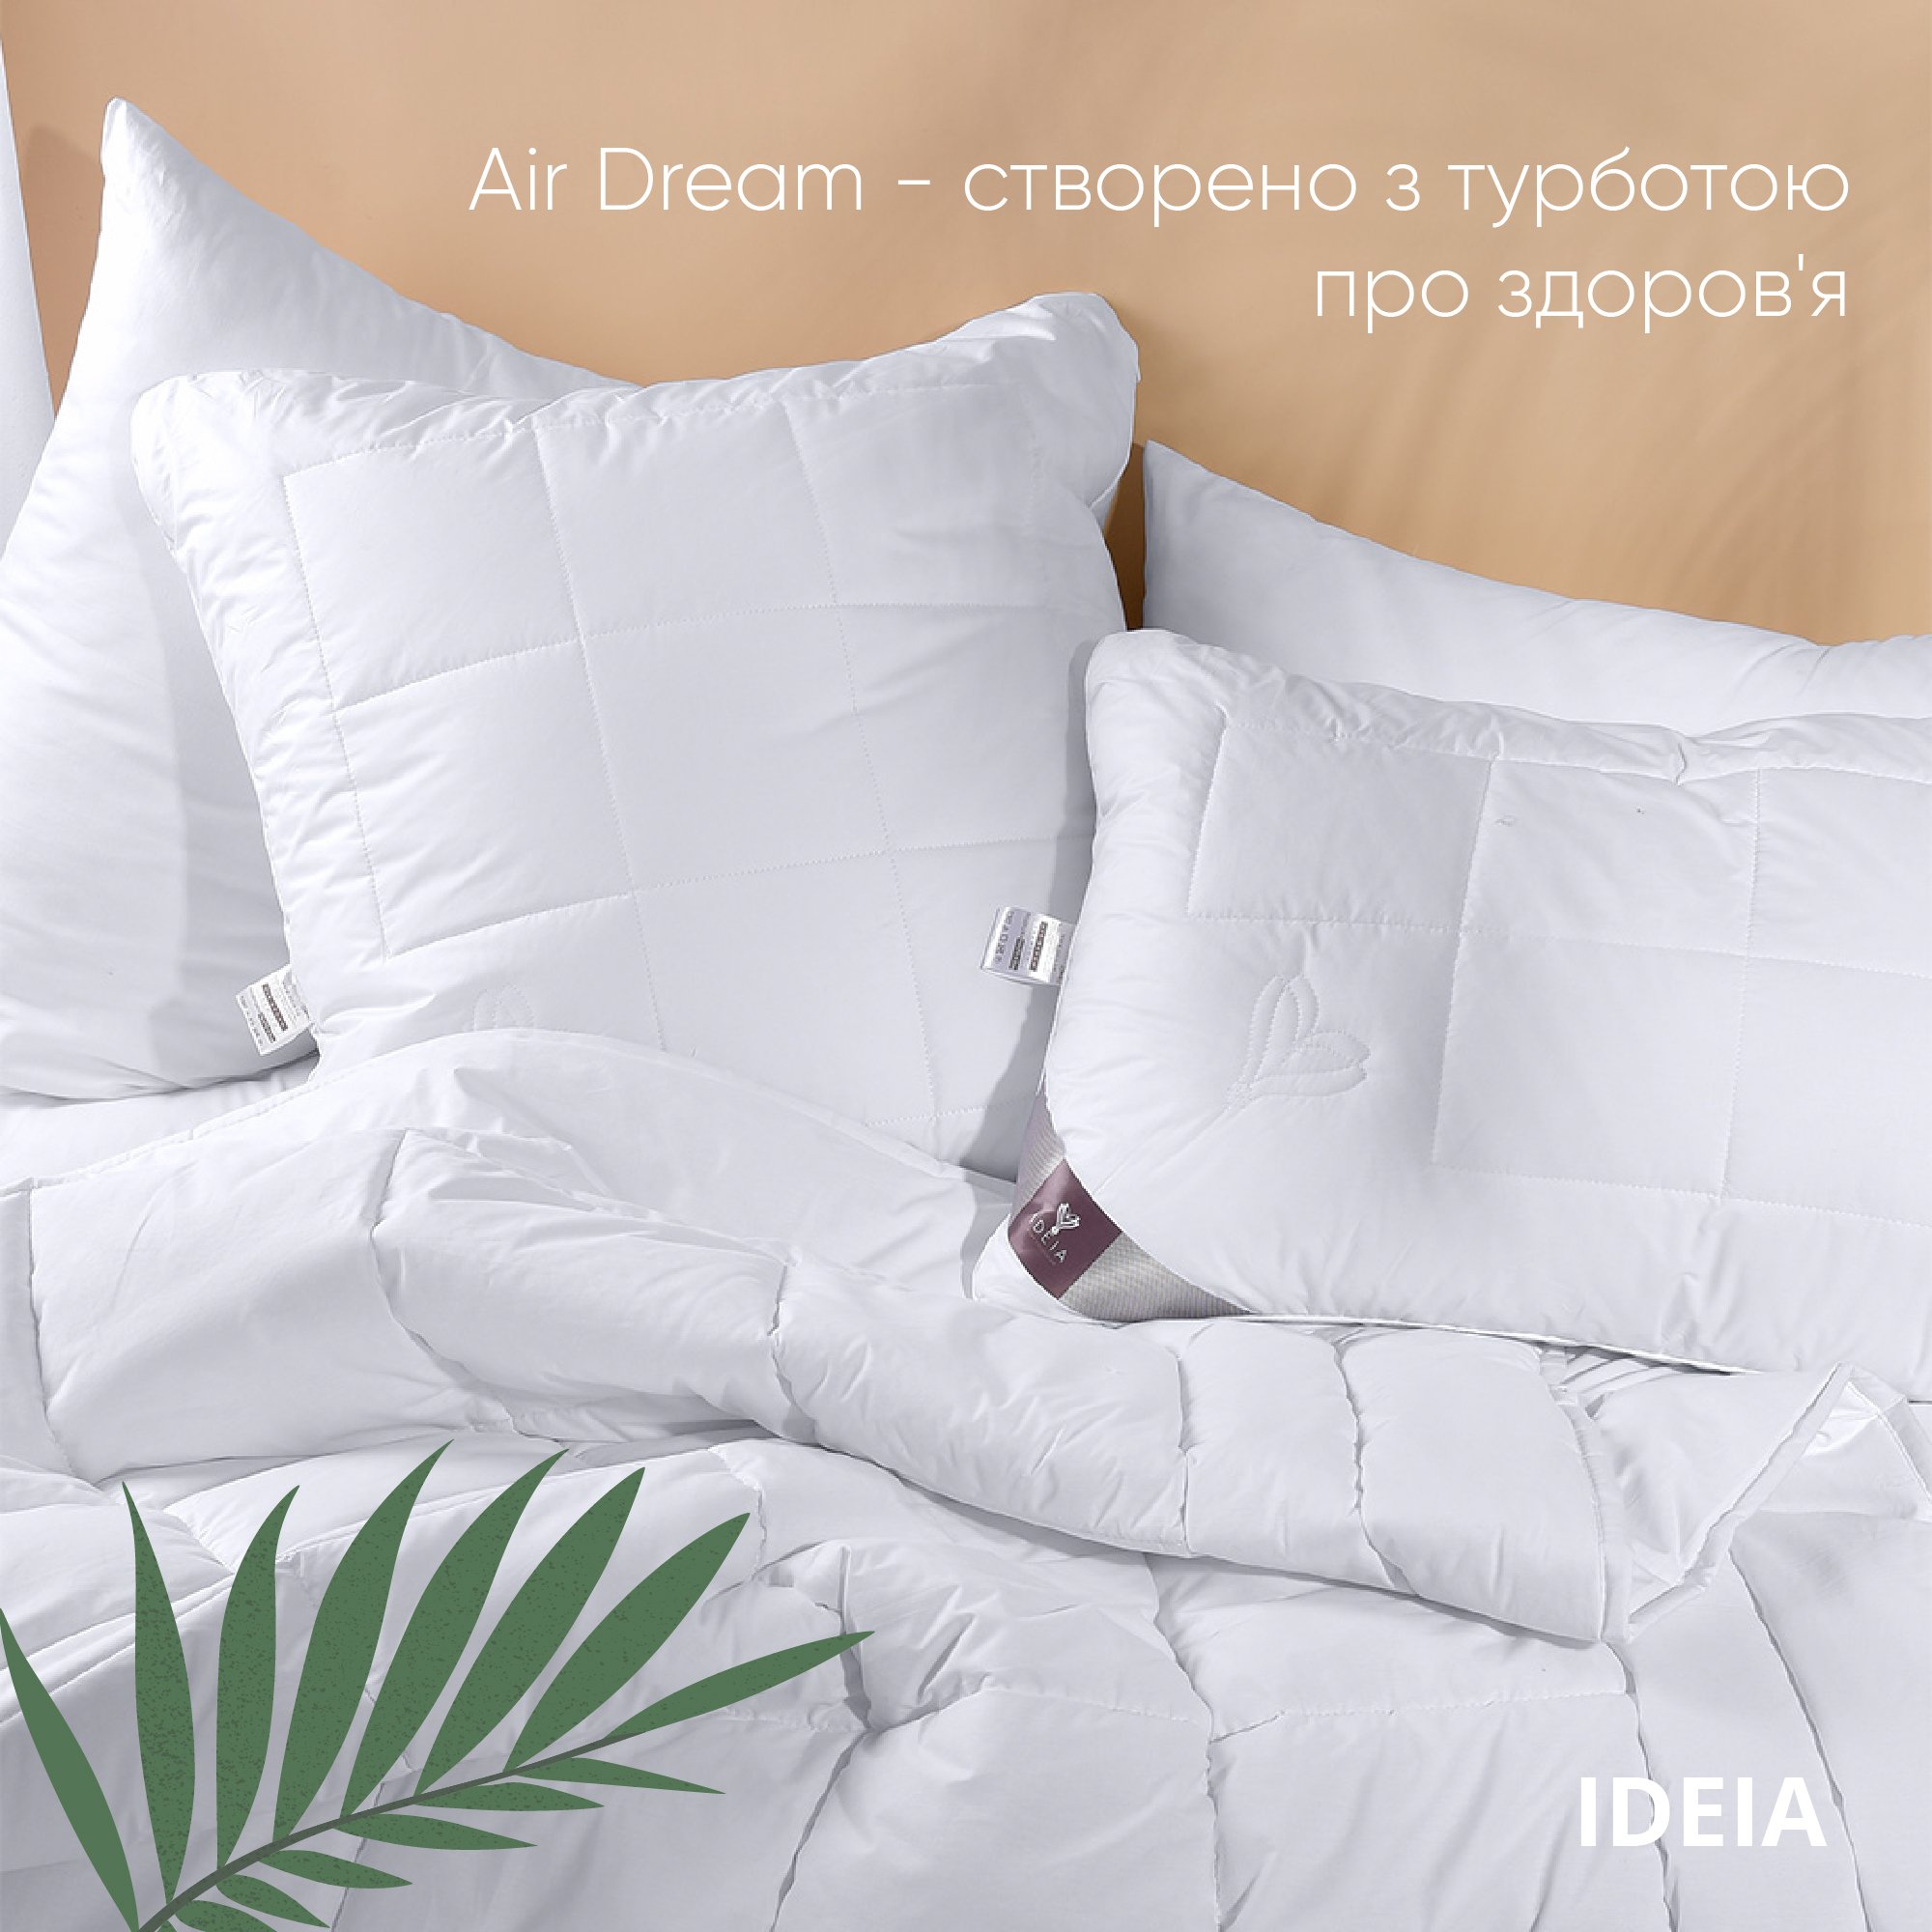 Одеяло Ideia Air Dream Premium зимнее, 215х155, белый (8-11694) - фото 6